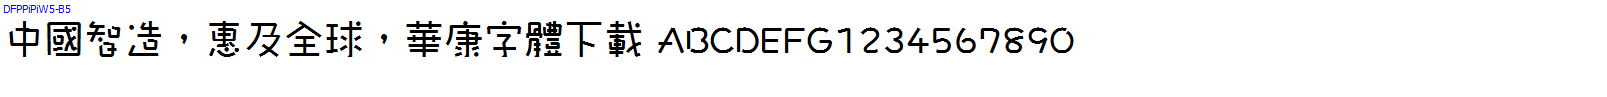 華康字體DFPPiPiW5-B5.TTF